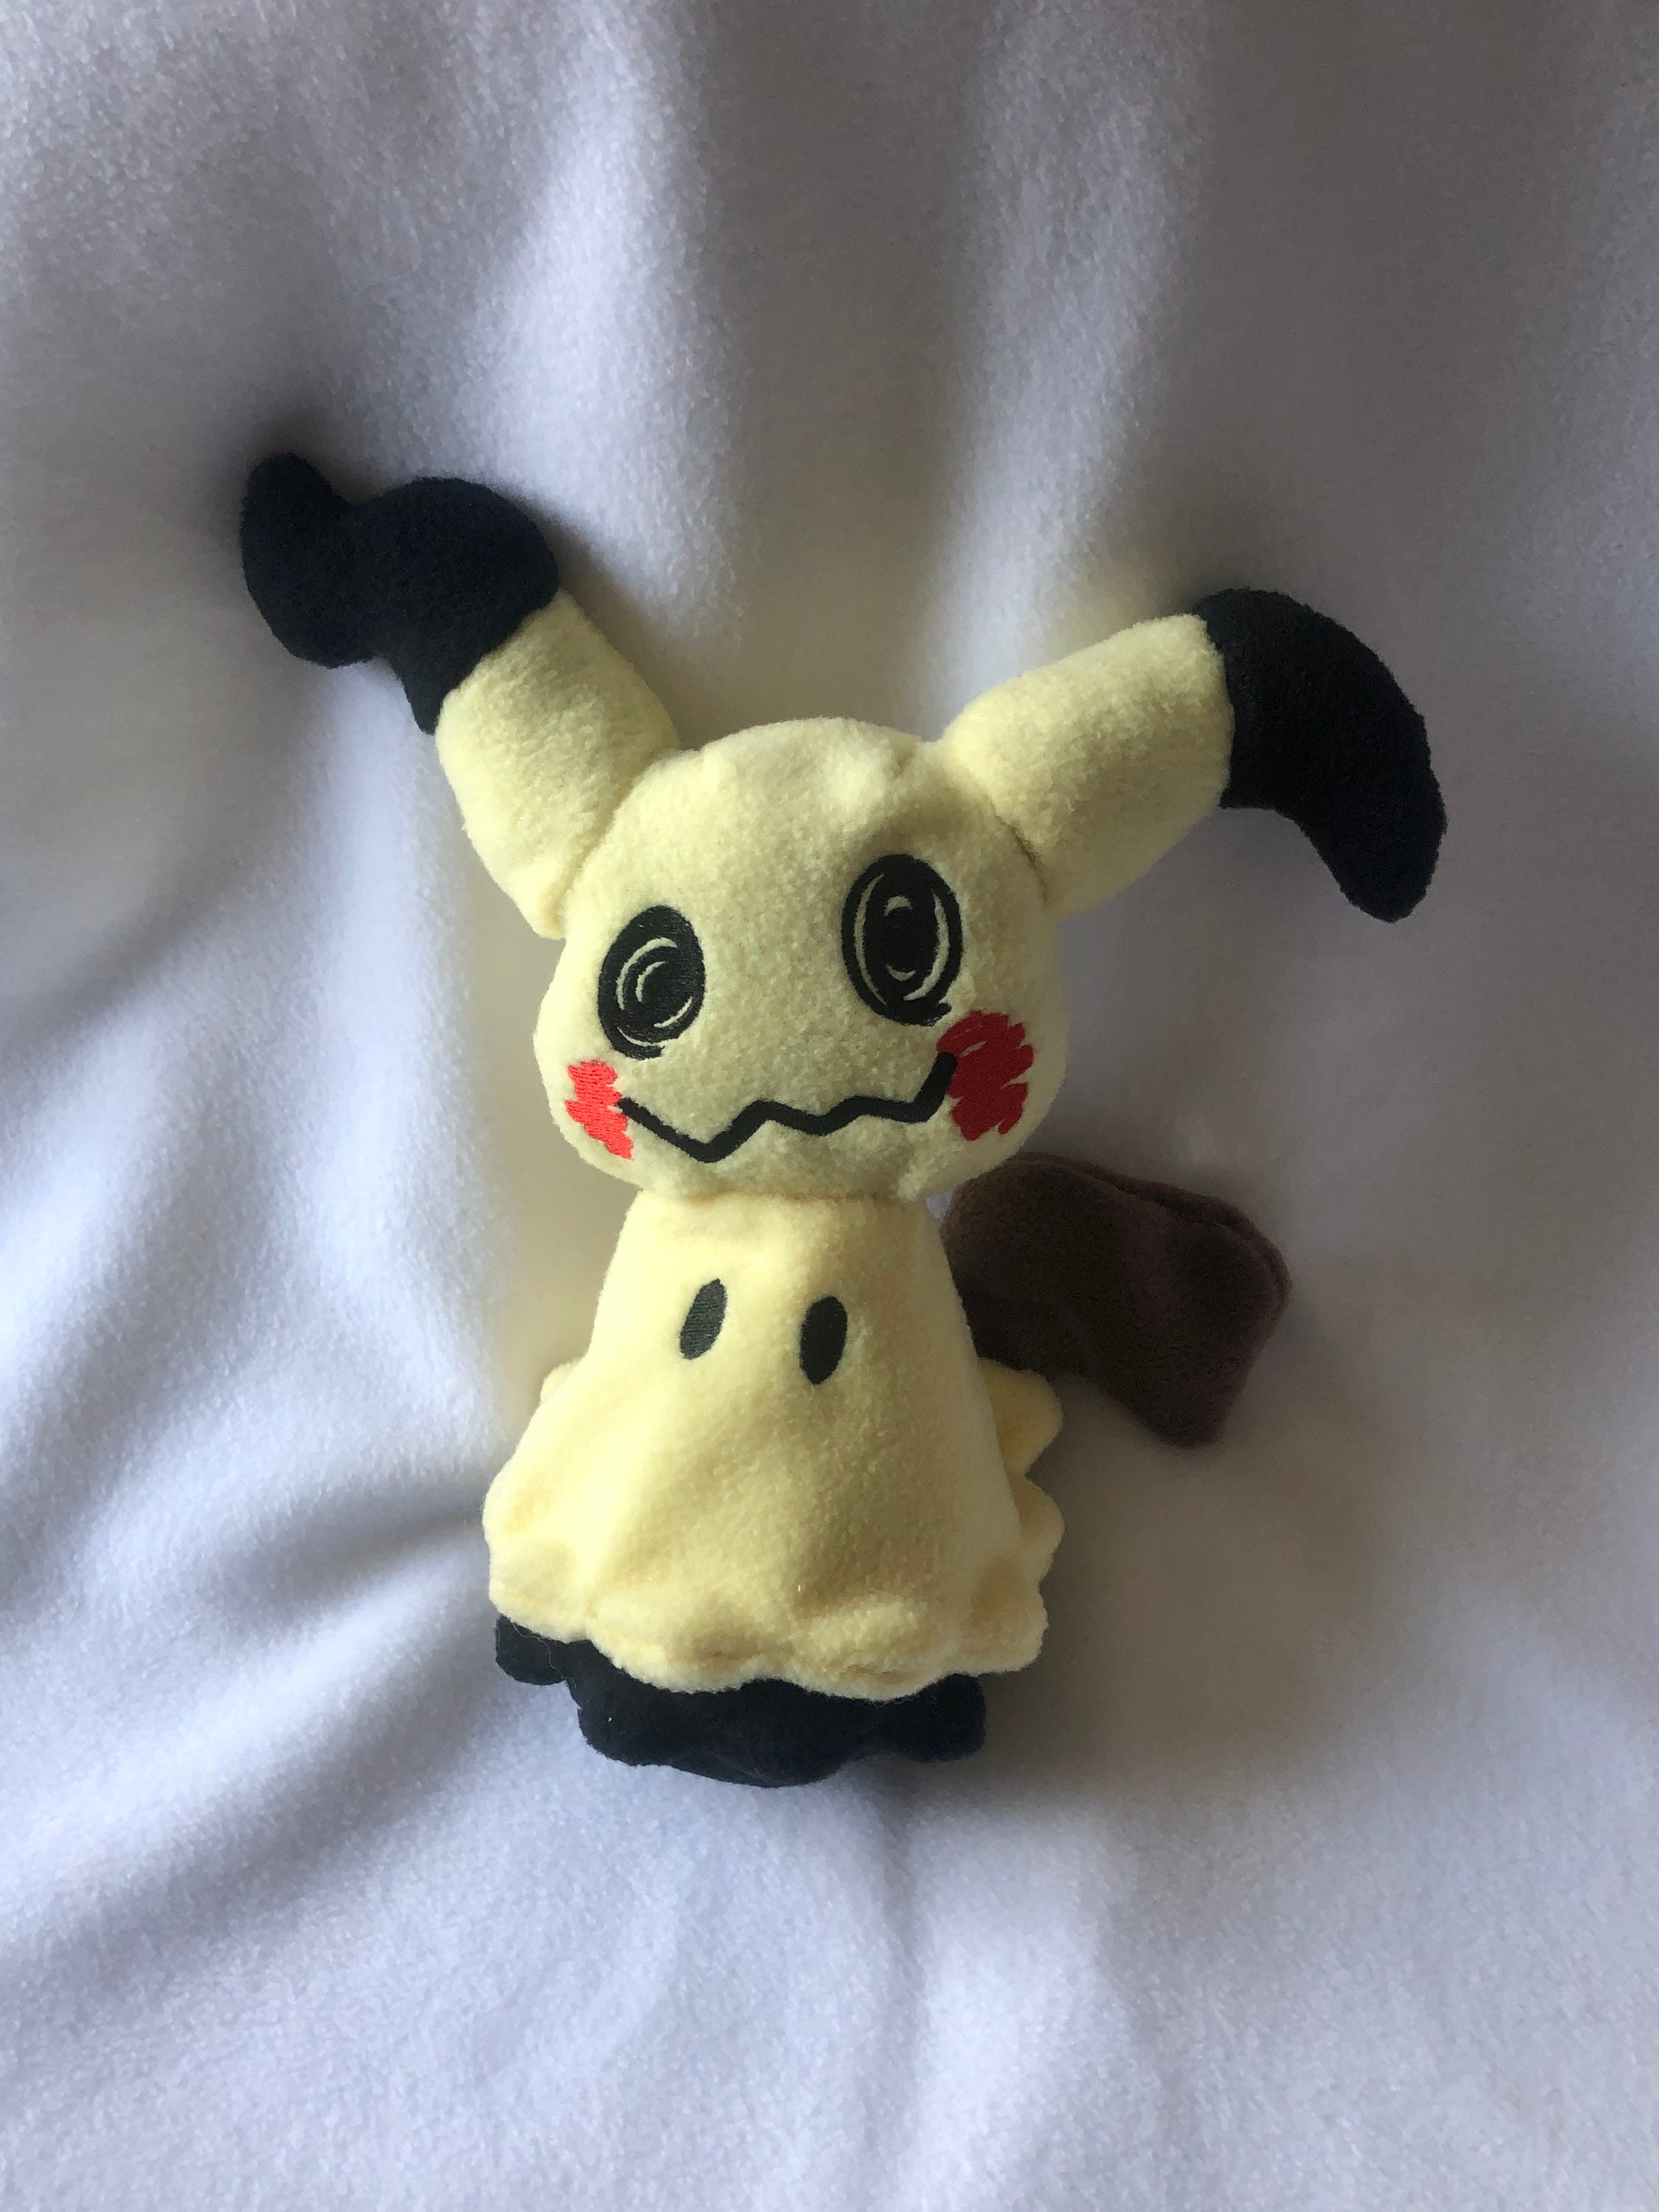 Pokemon Center 10-Inch Shiny Mimikyu Stuffed Plush Doll